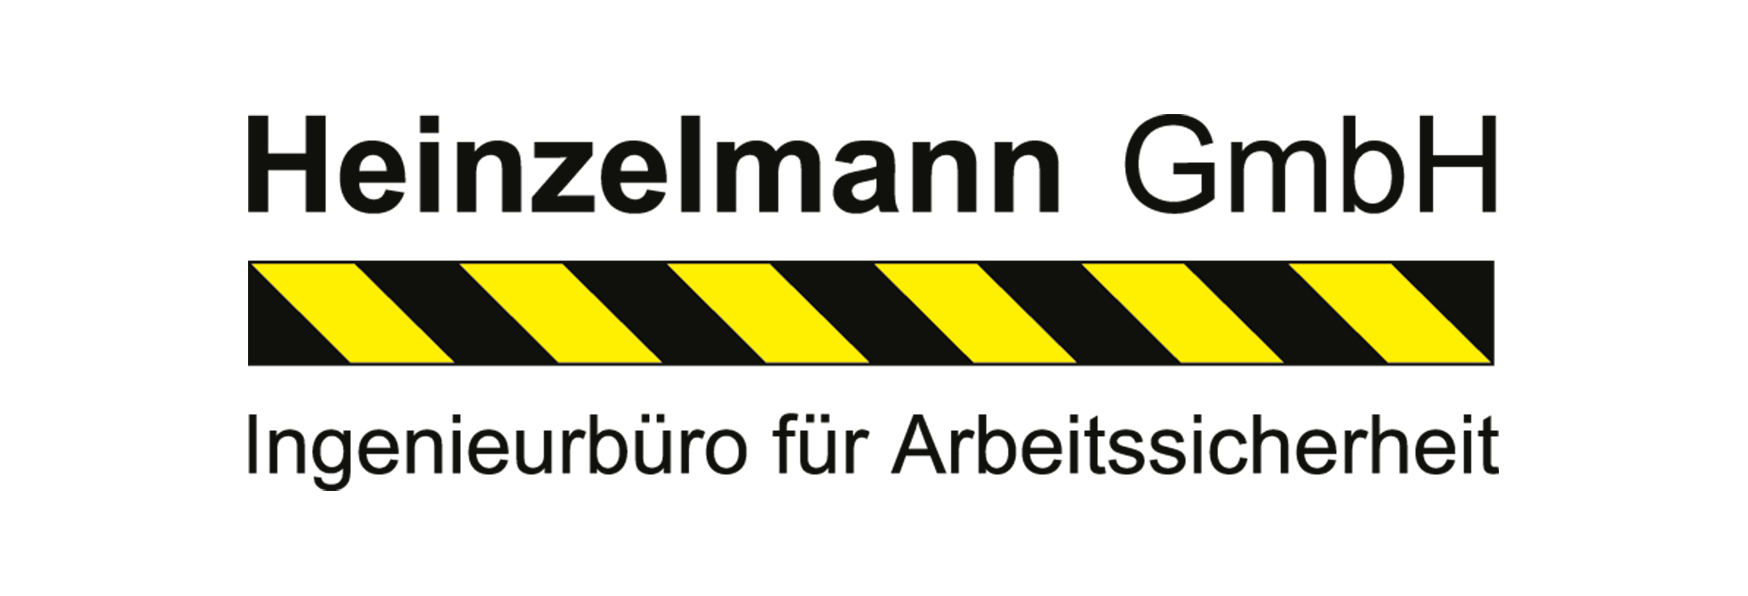 Heinzelmann GmbH